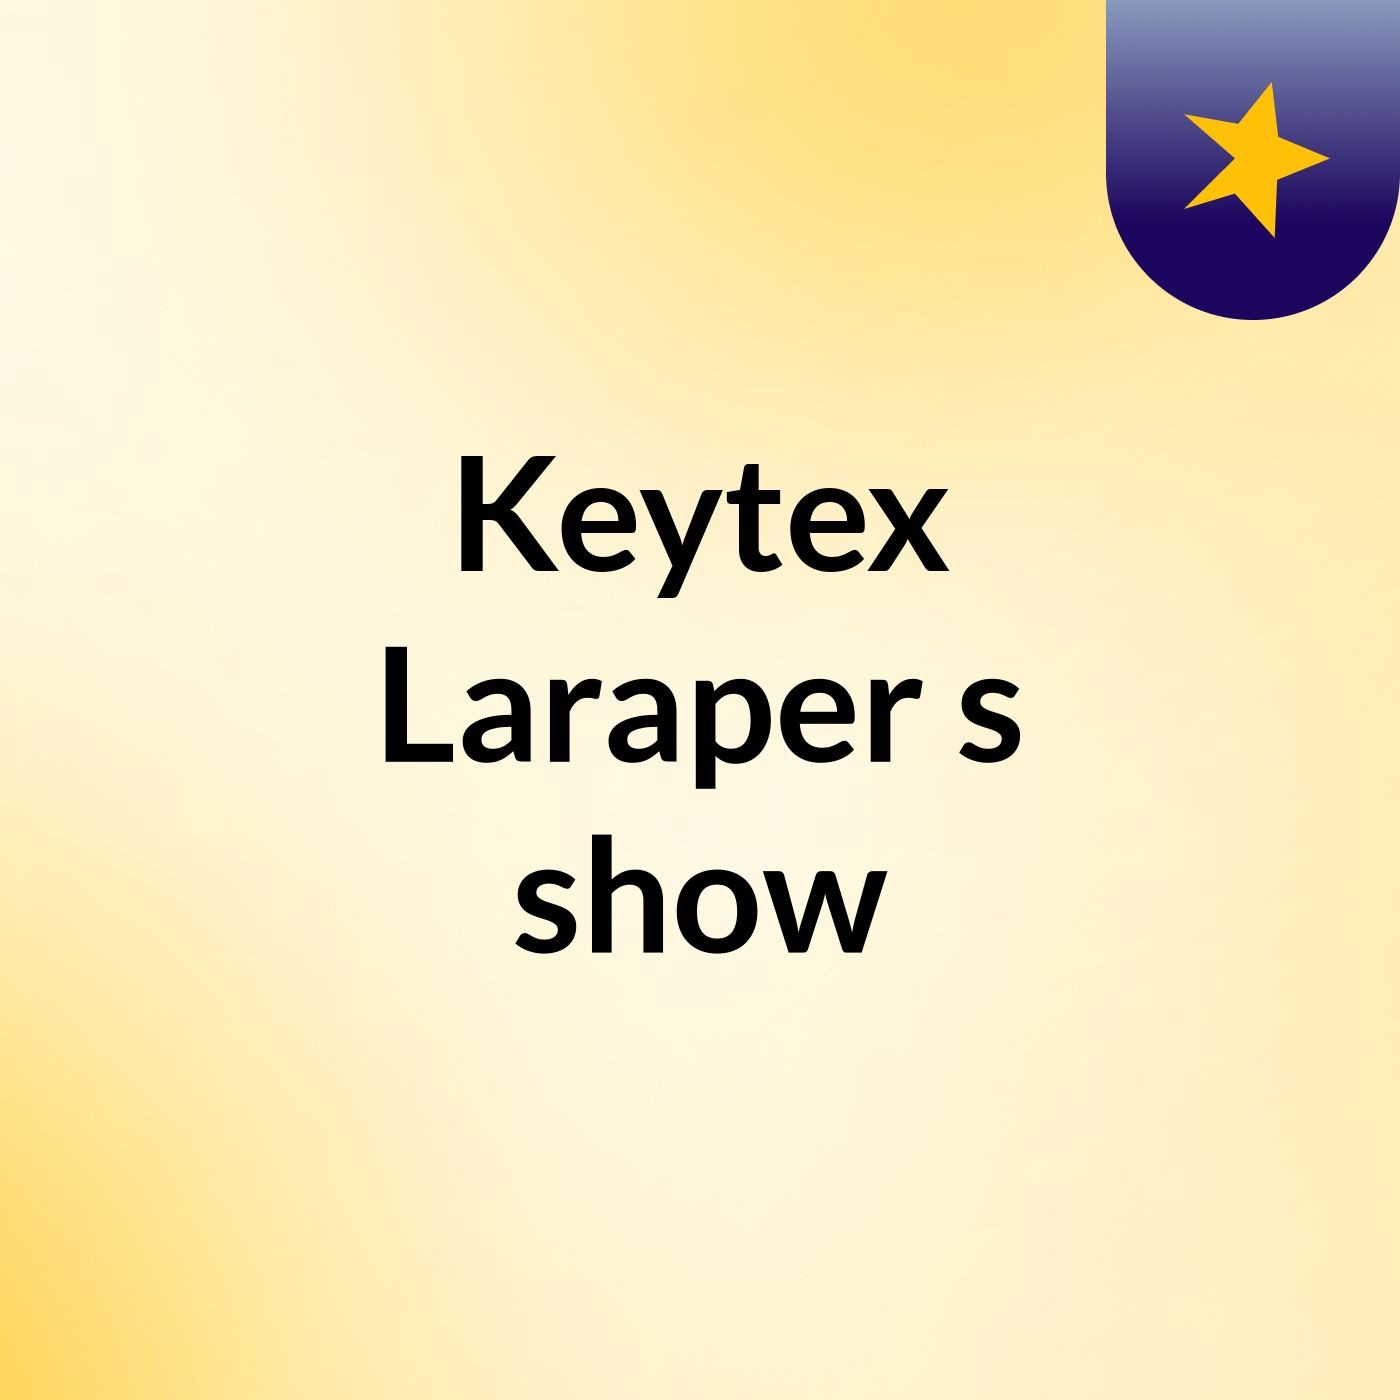 Keytex Laraper's show